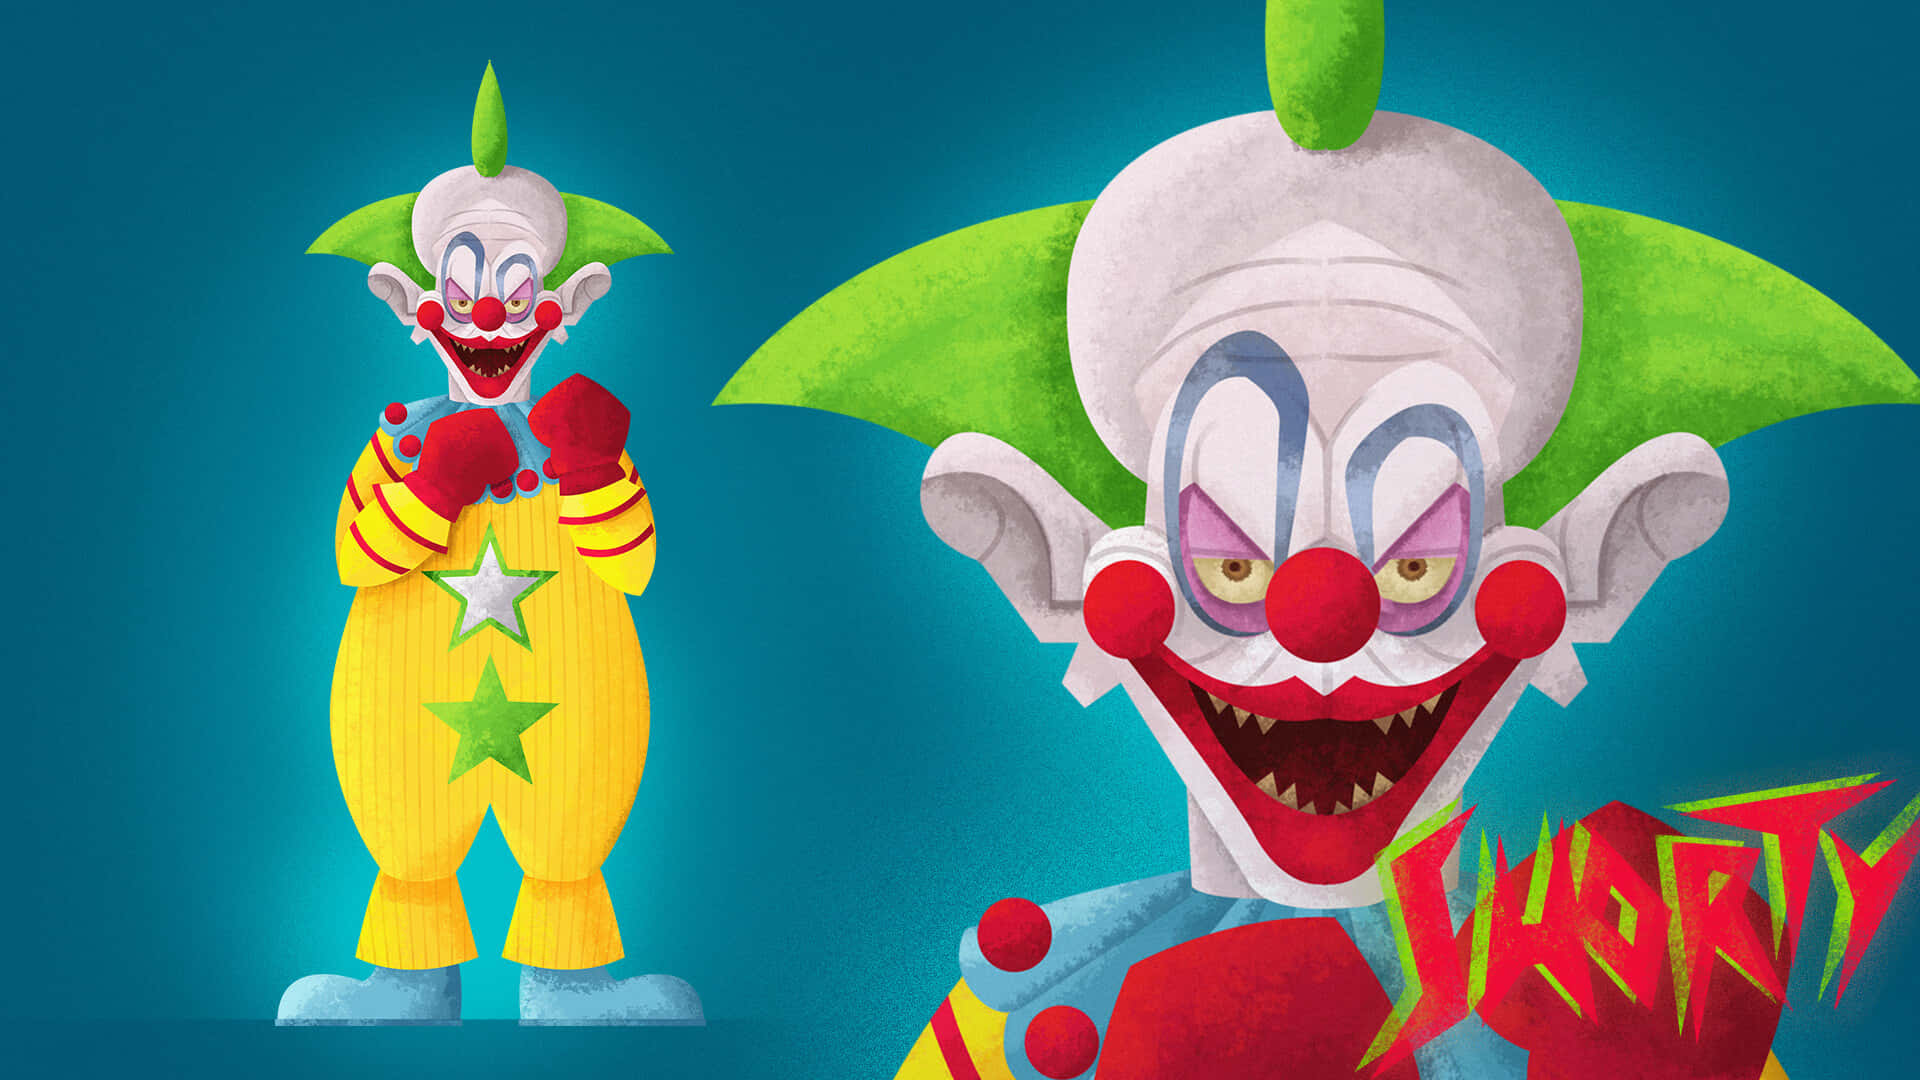 Lad ikke de vilde opførsel af disse Killer Klowns nar dig. Wallpaper